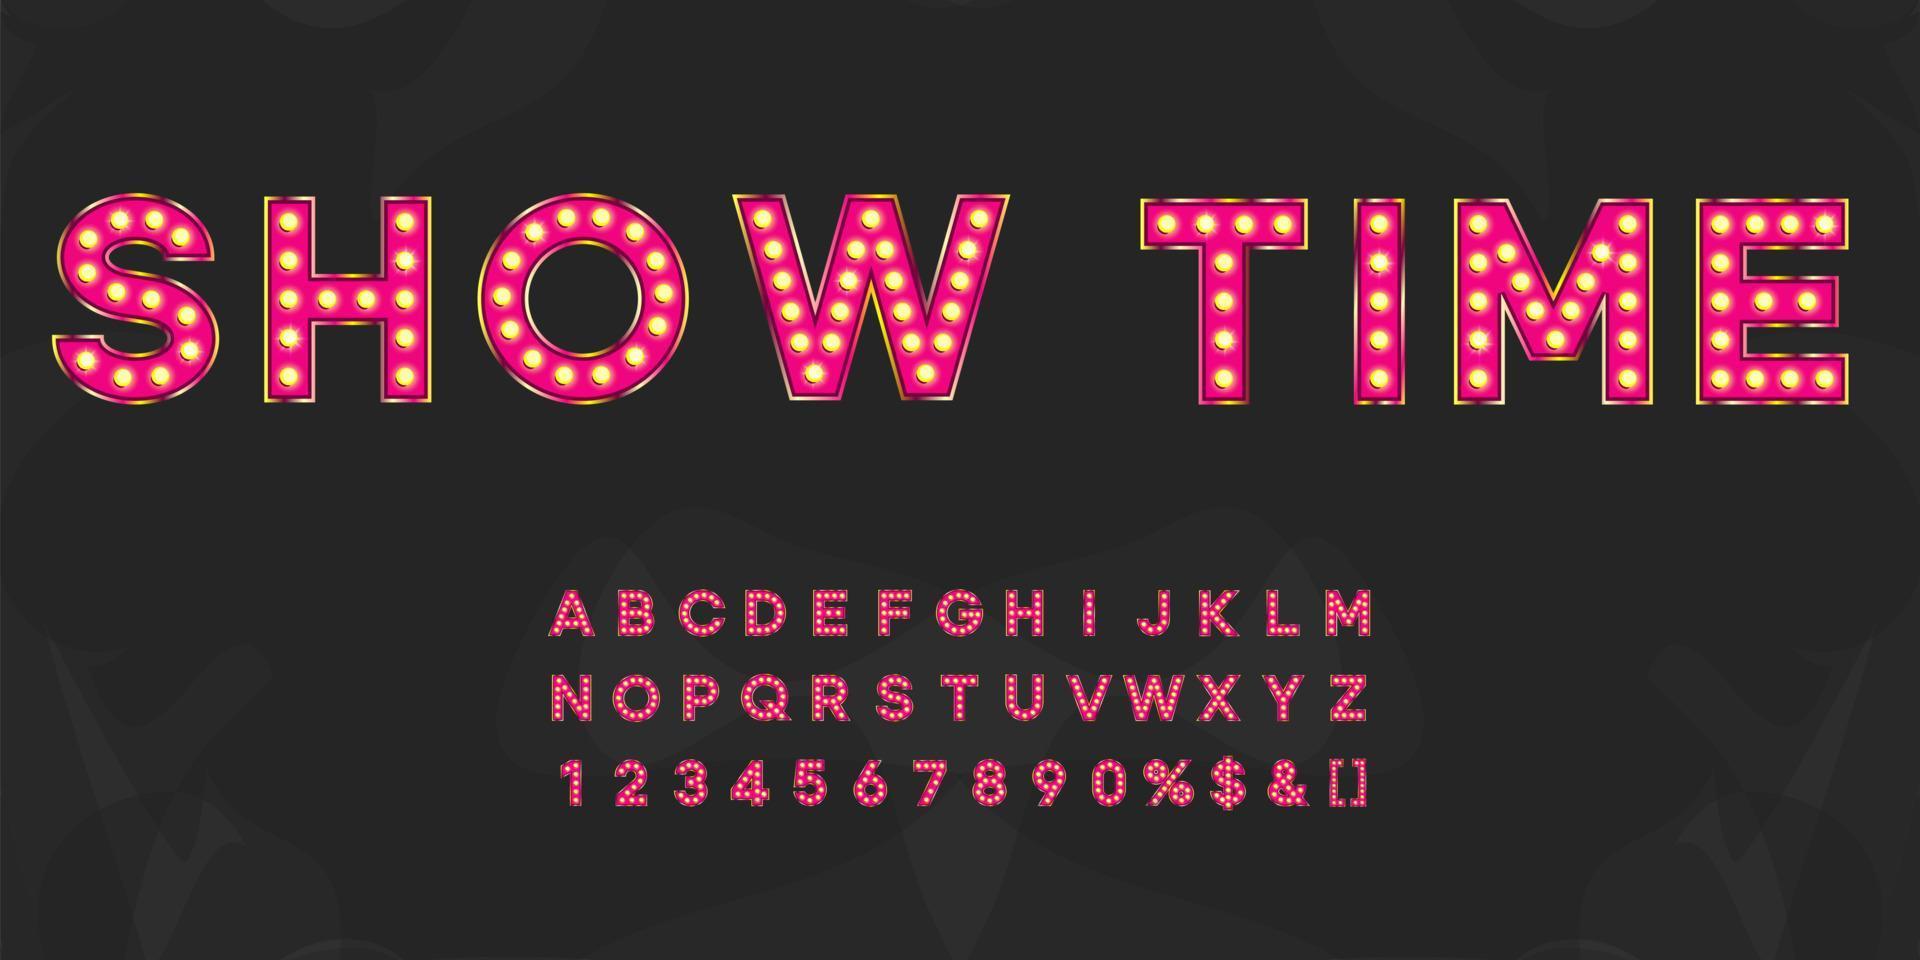 rosa visa tid lyser tält alfabet med siffror och varmt ljus. vintage upplysta bokstäver för textlogotyp eller rea banner vektor